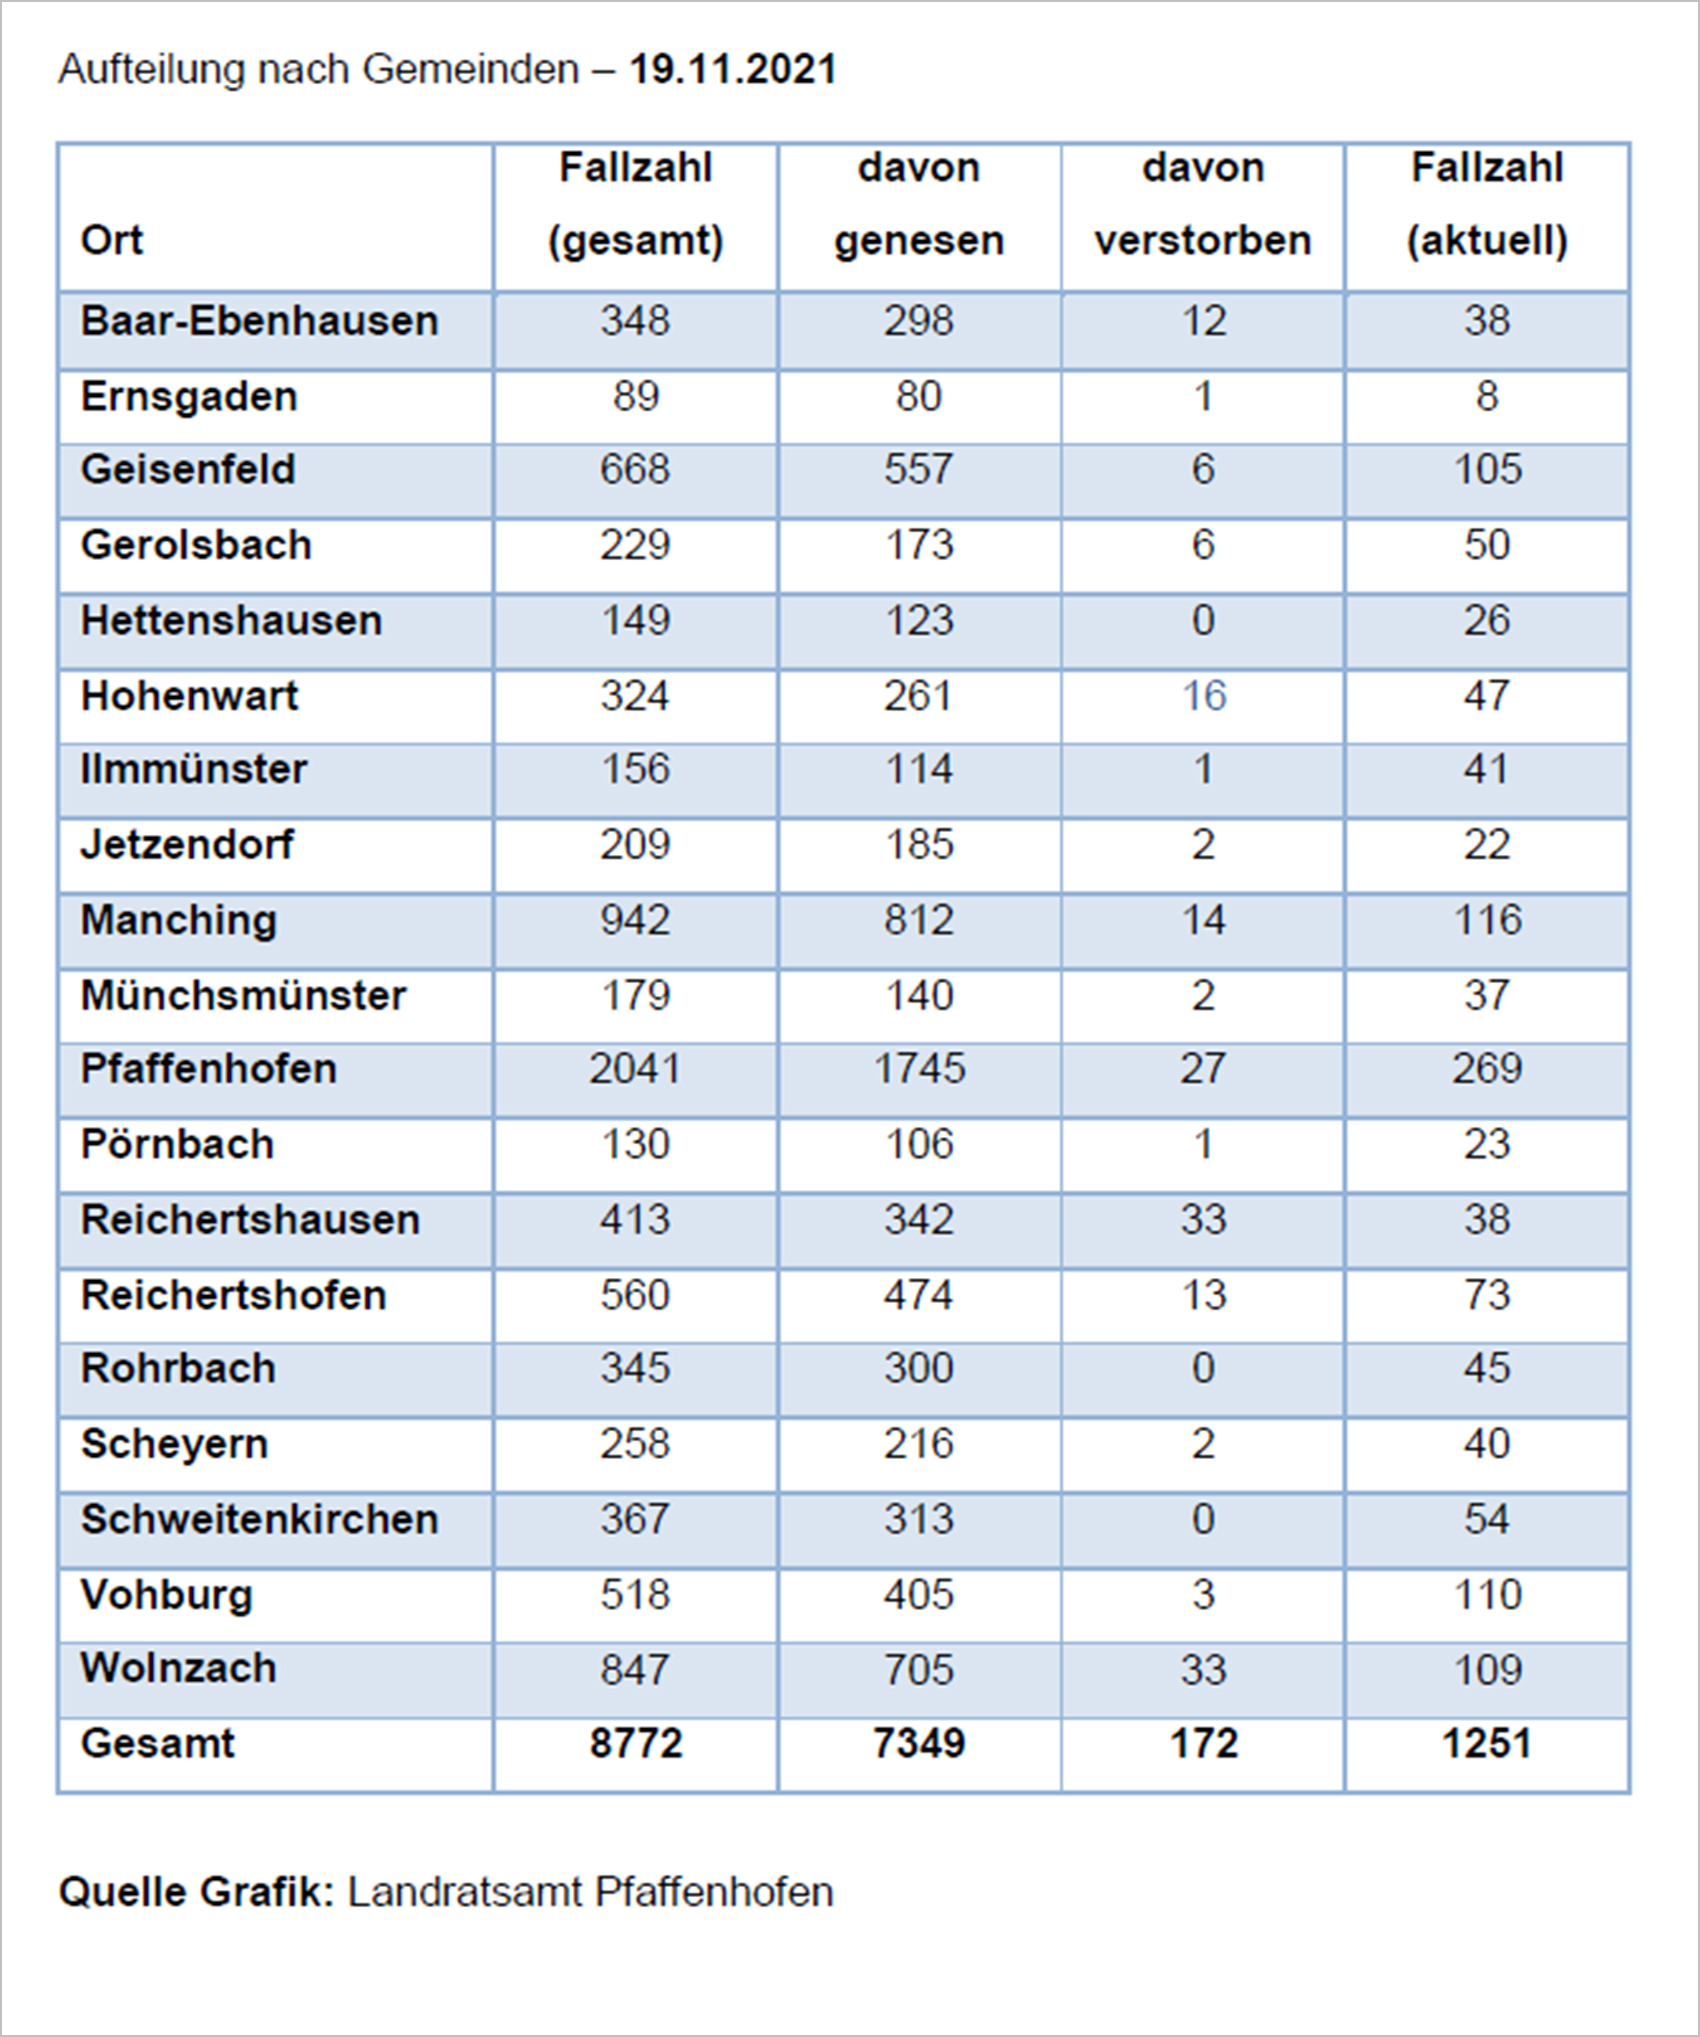 Verteilung der Fallzahlen auf die Landkreisgemeinden - 19.11.2021